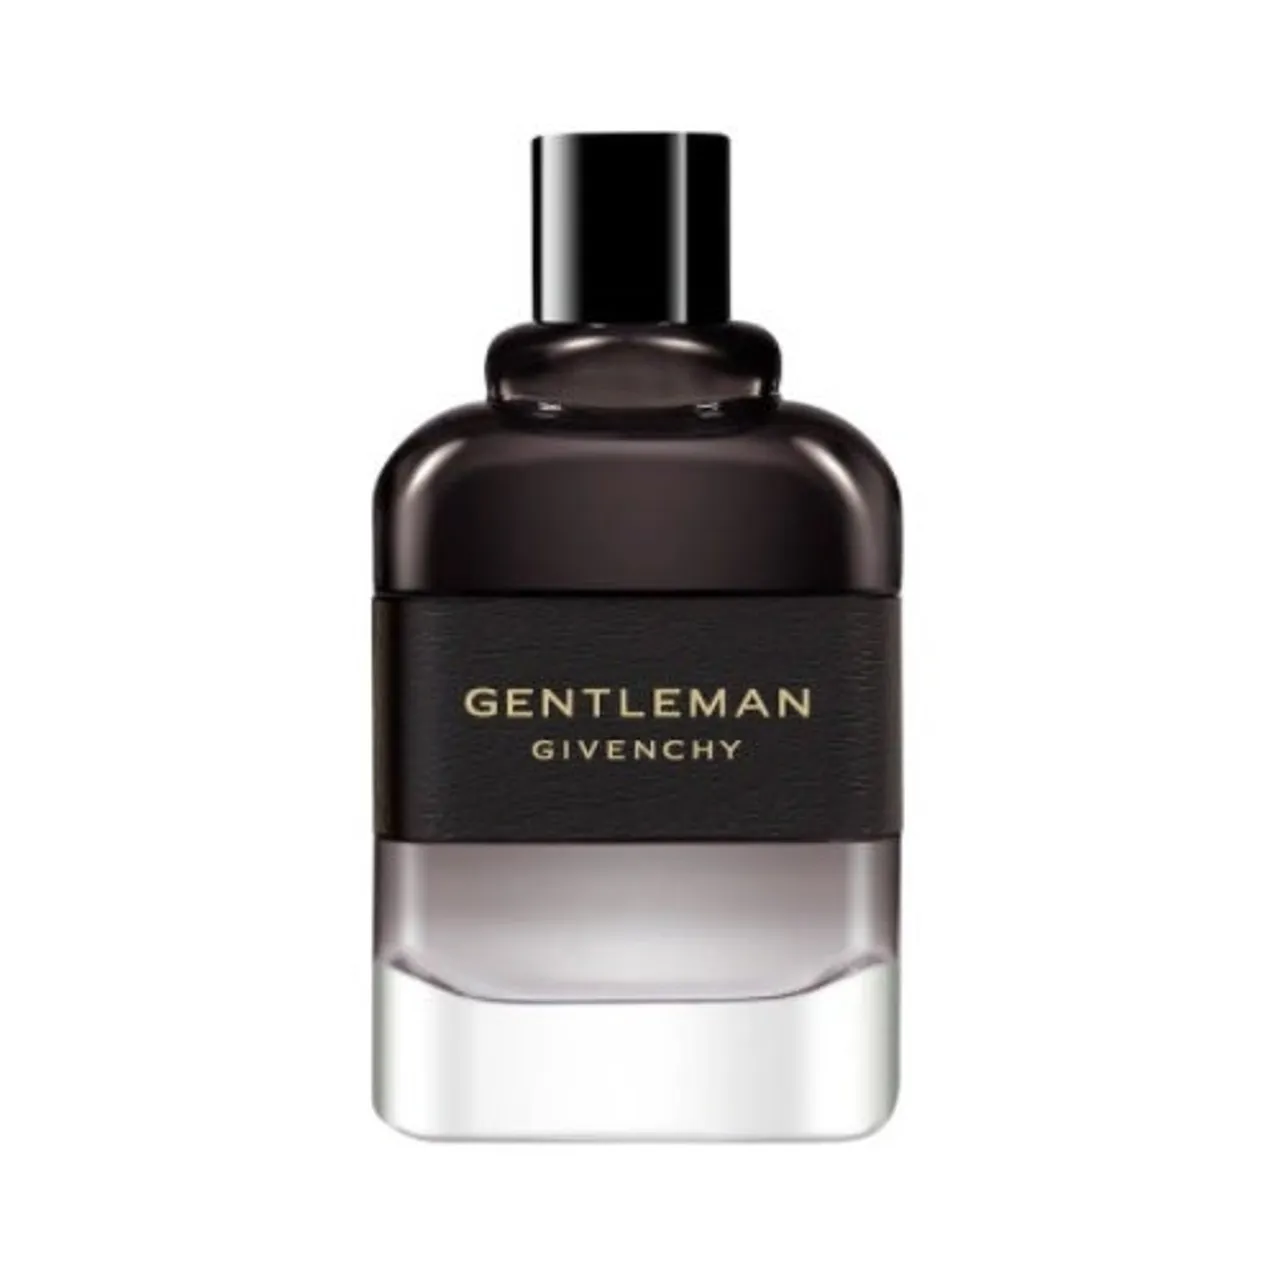 Givenchy Gentleman Boisee Eau de Parfum 100 ml